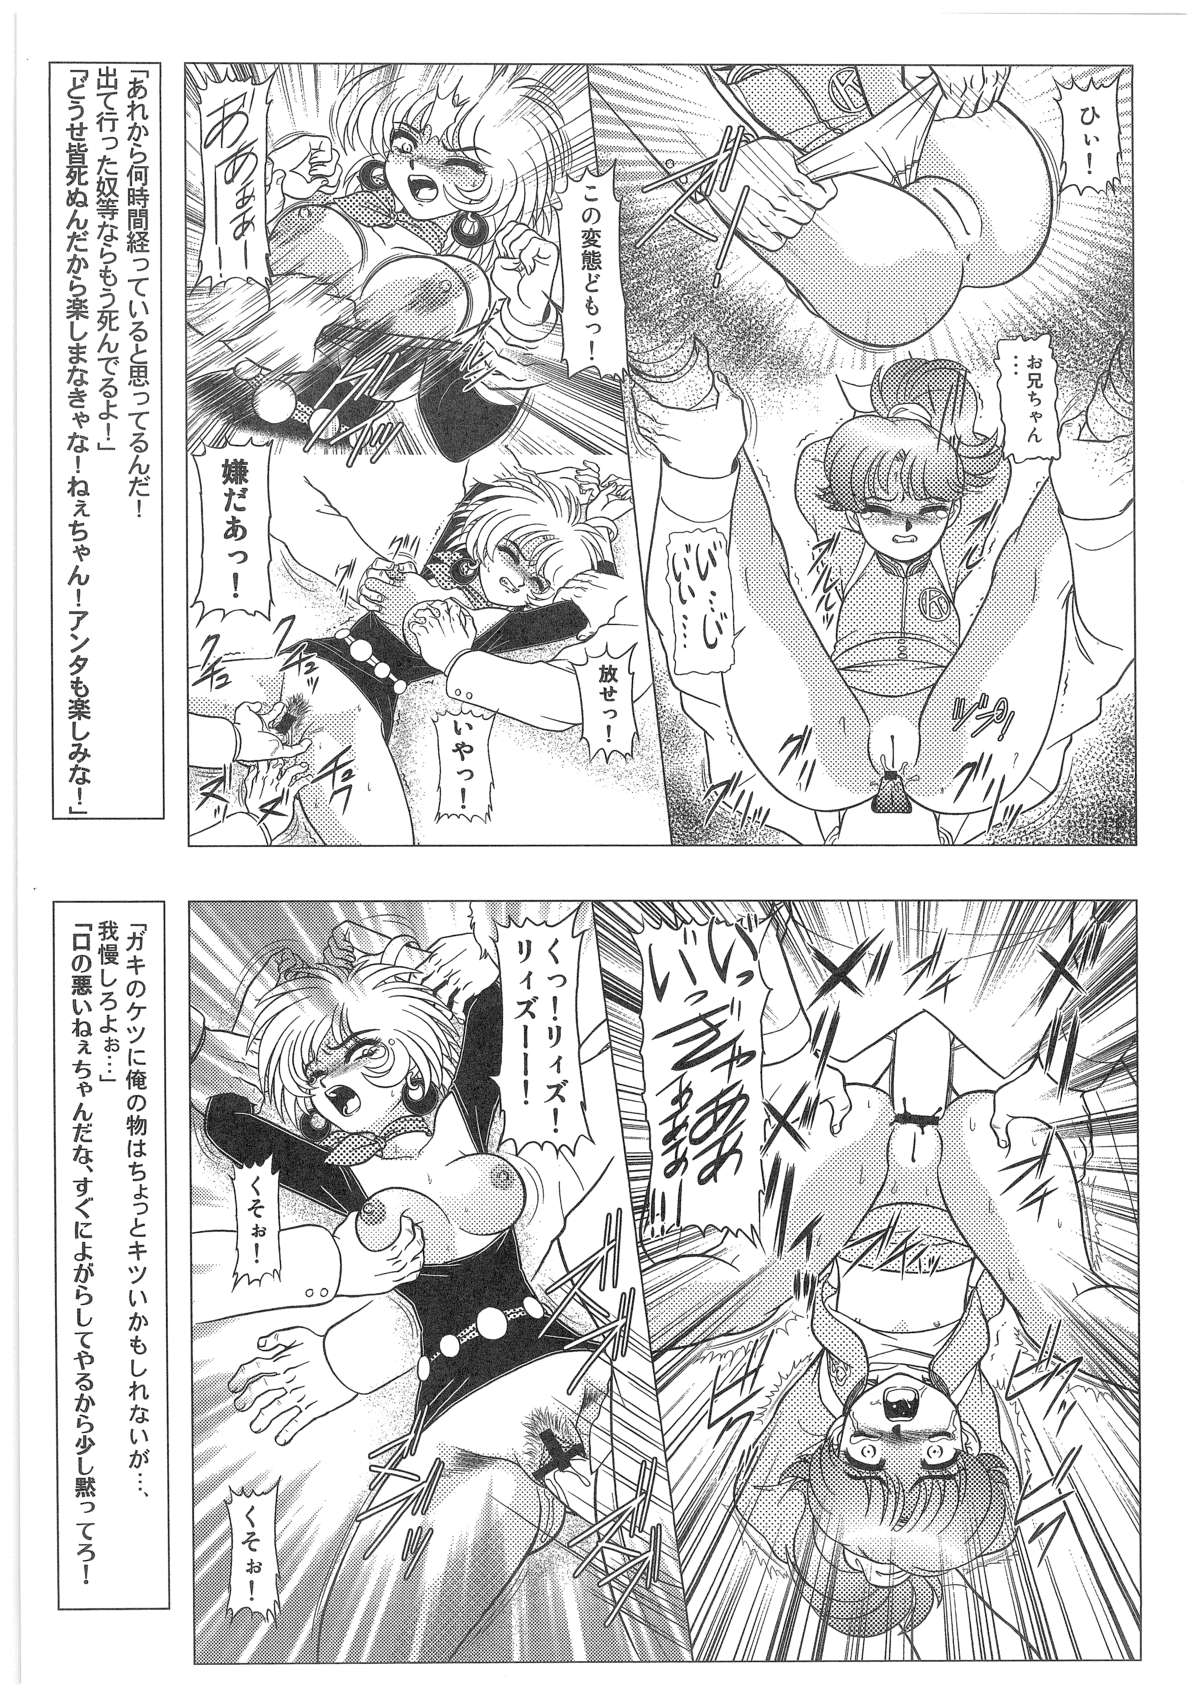 [Dakimakuma, Jingai Makyou Club (WING☆BIRD)] CHARA EMU W☆B010 GONDAM 008 ZZ-W-F91 (Various) page 18 full